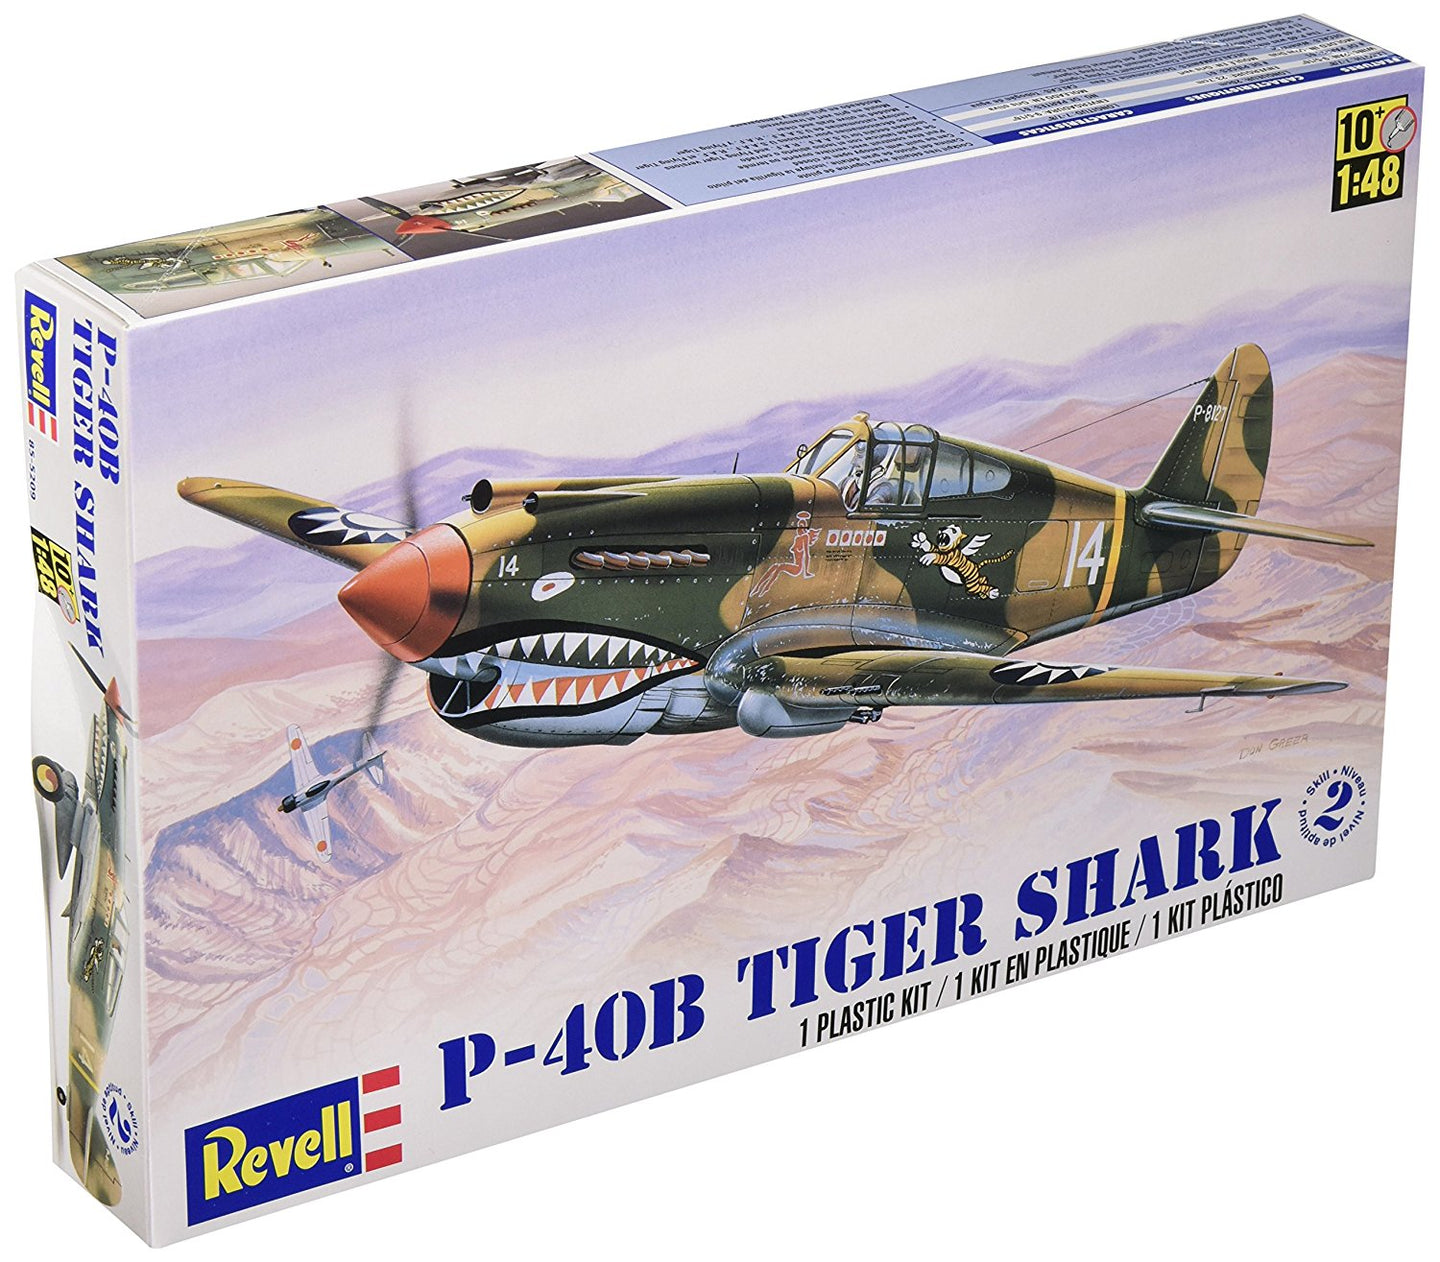 Revell 1/48 US P-40B Tiger Shark 855209